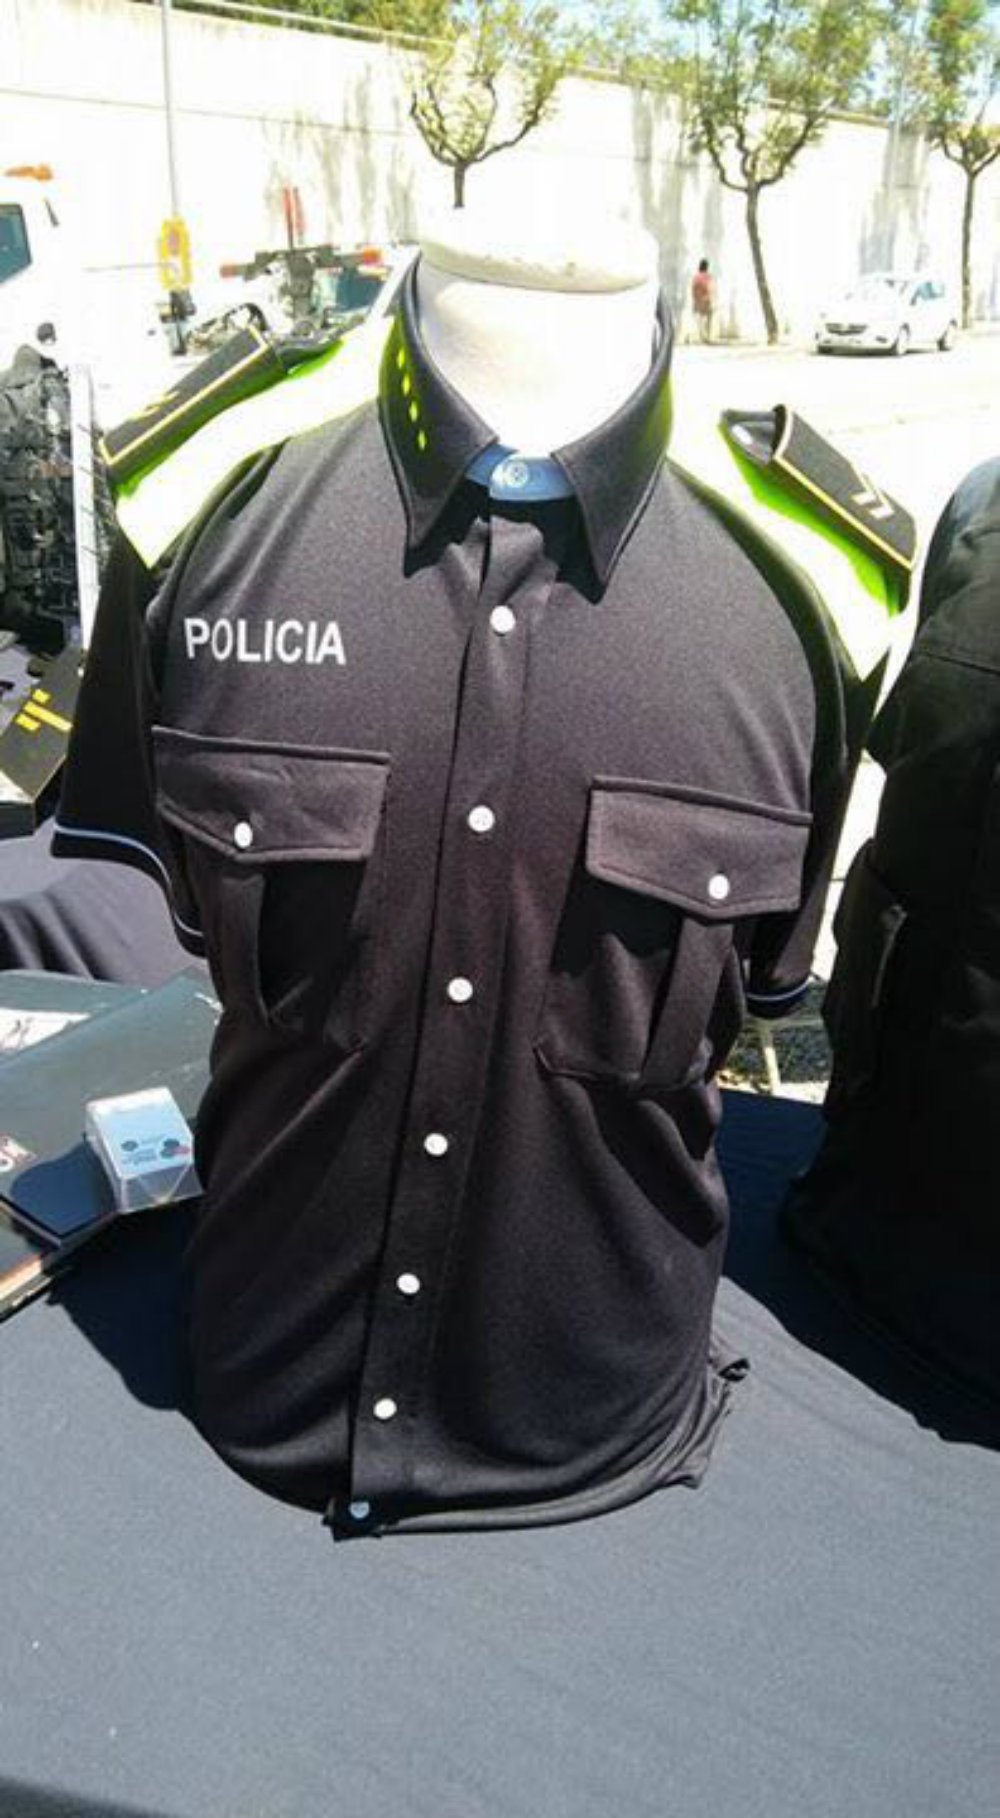 Los nuevos uniformes de las policías locales son azul oscuro con franjas fluorescentes